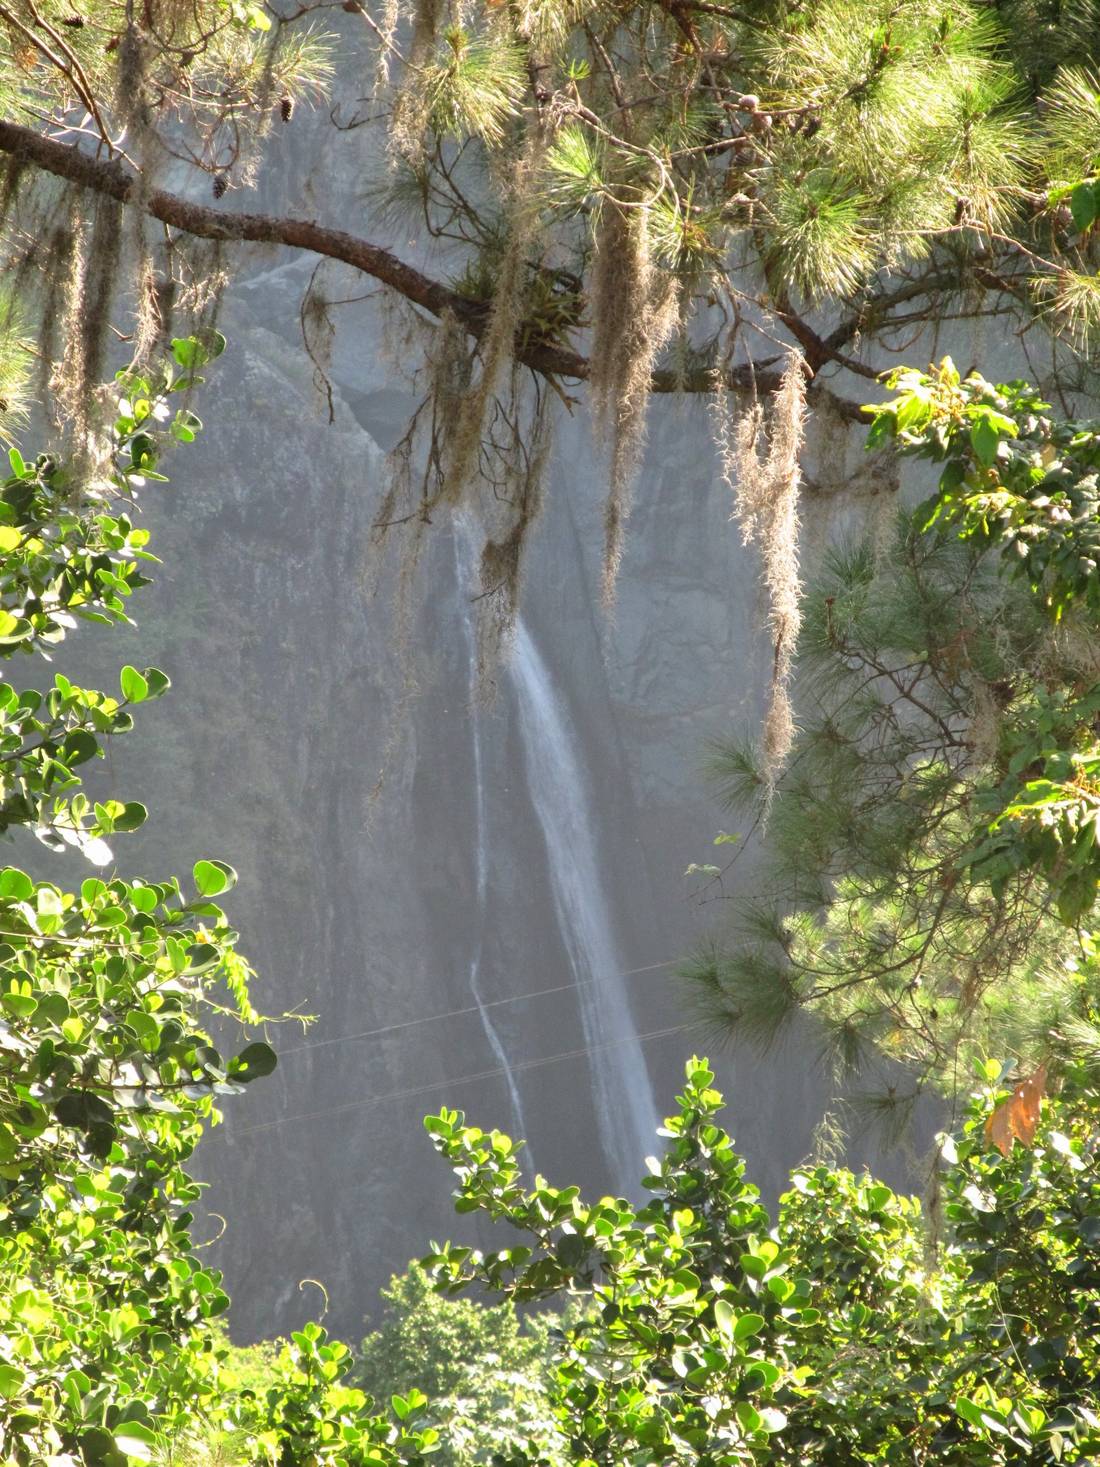 Pomiędzy gałęziami drzew, można ujrzeć w dole wodospad Salto de Jimenoa Uno